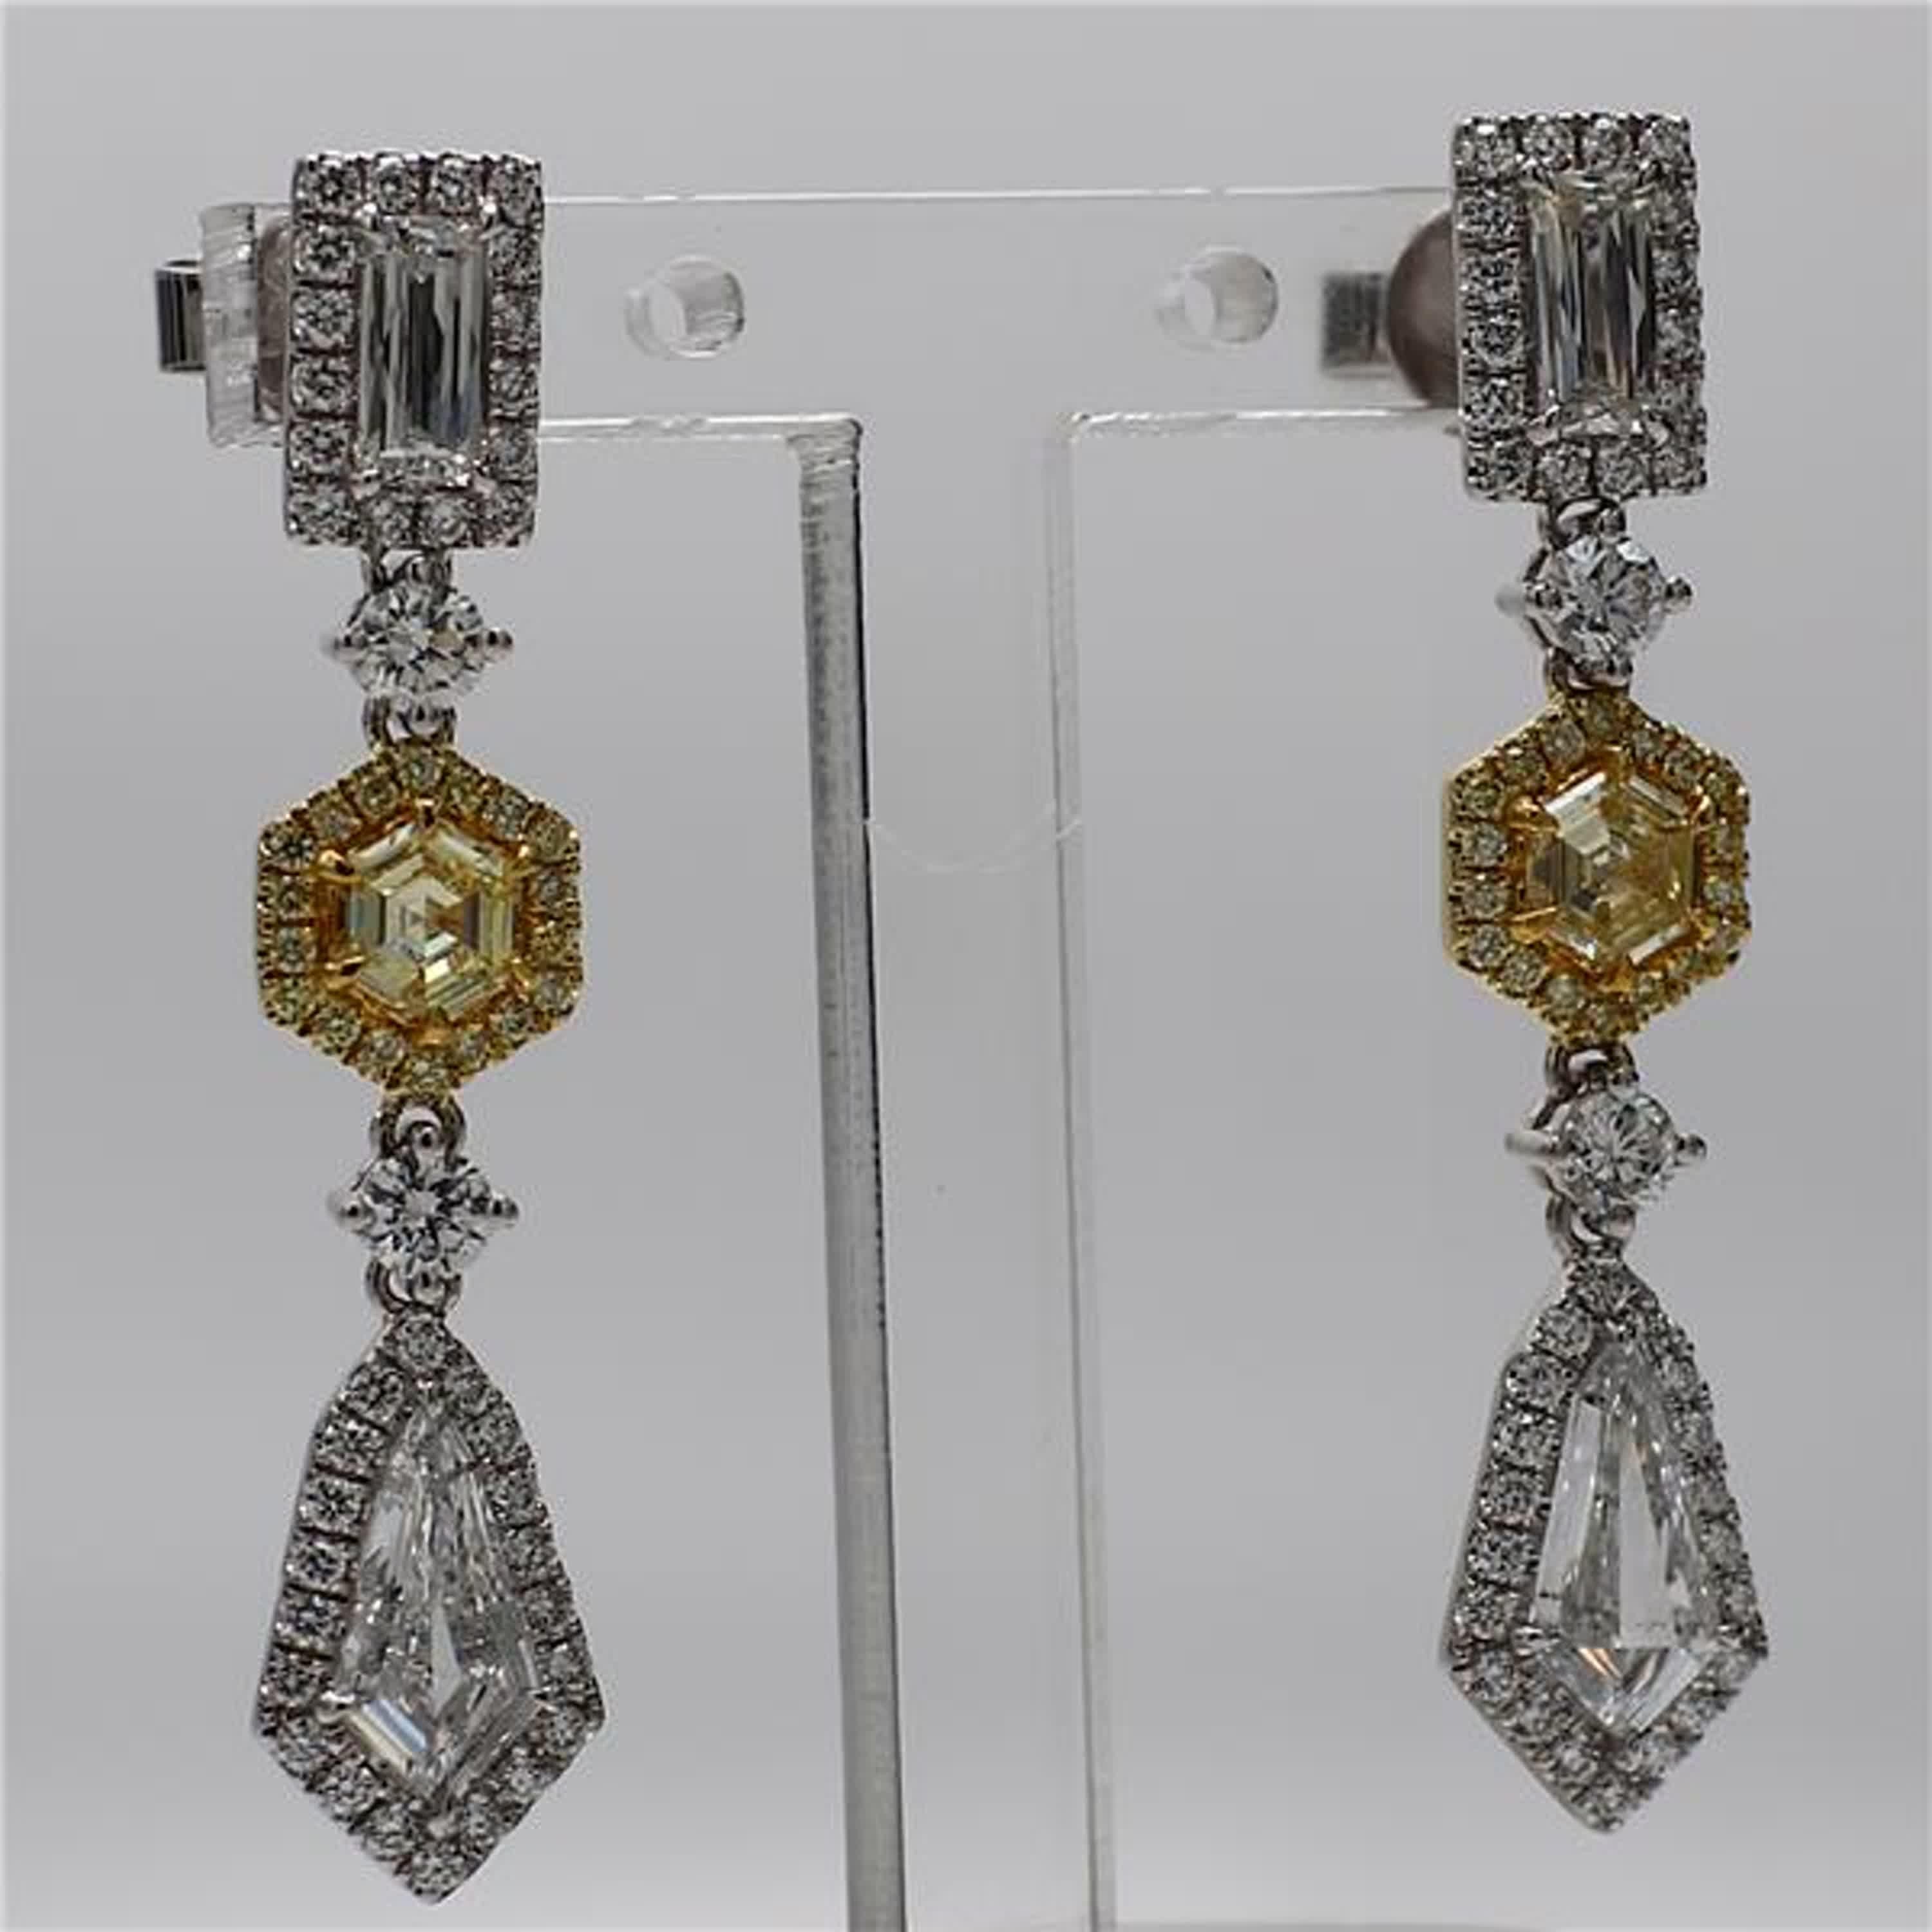 GIA Certified Yellow Hexagon and White Kite Diamond 2.54 Carat Tw Gold Earrings 1